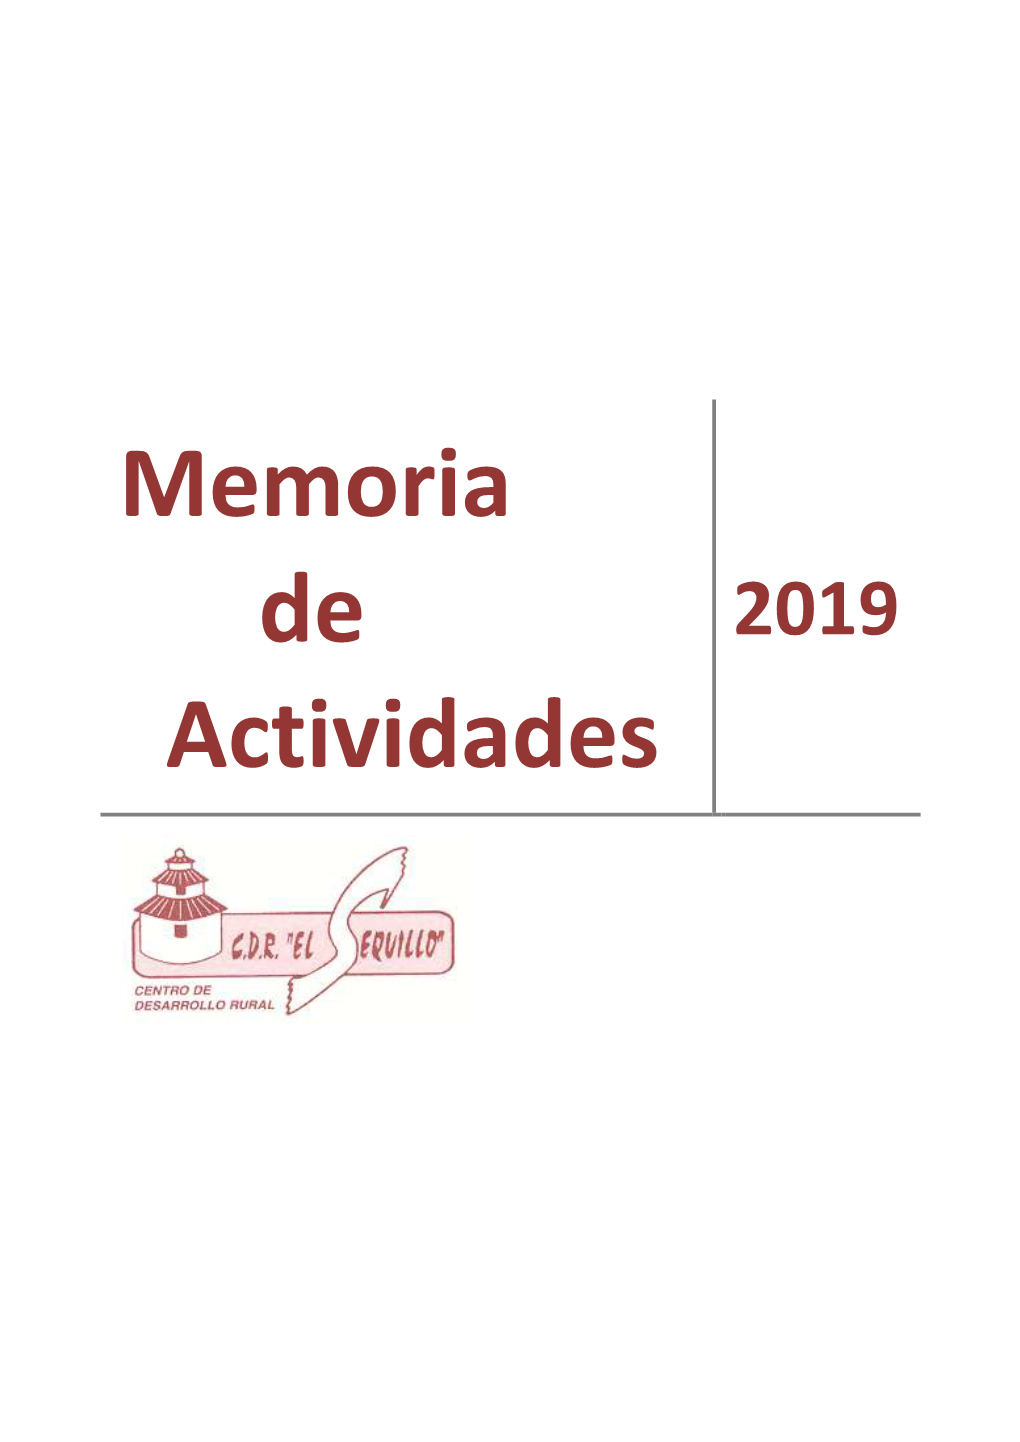 Memoria De Actividades 2019